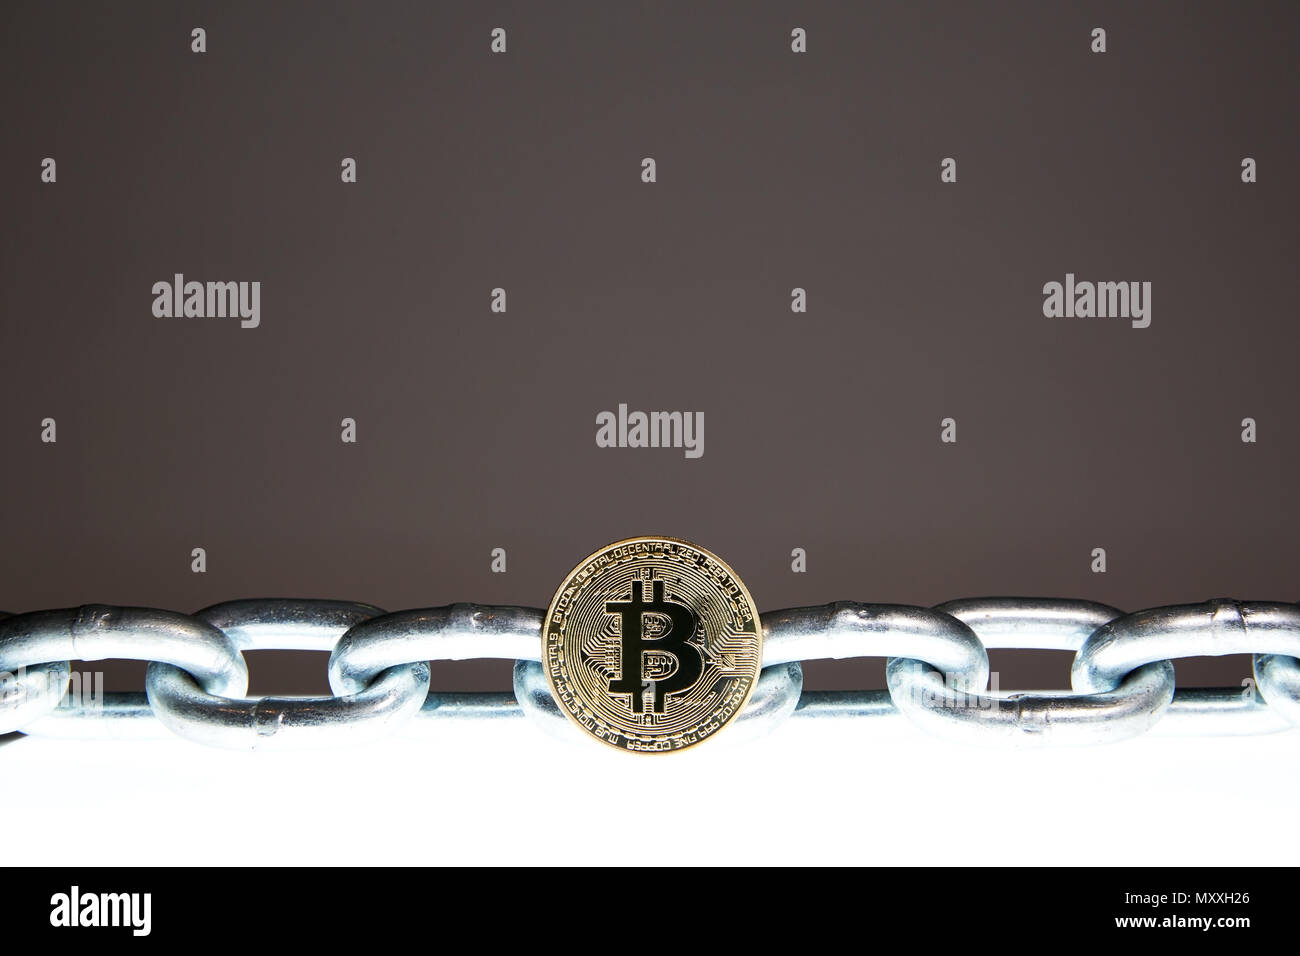 Un Bitcoin est situé sur une surface brillante blanc tandis qu'une chaîne en métal acier lourd se trouve derrière. Concepts de la technologie de la chaîne d'bloc et la monnaie numérique. Banque D'Images